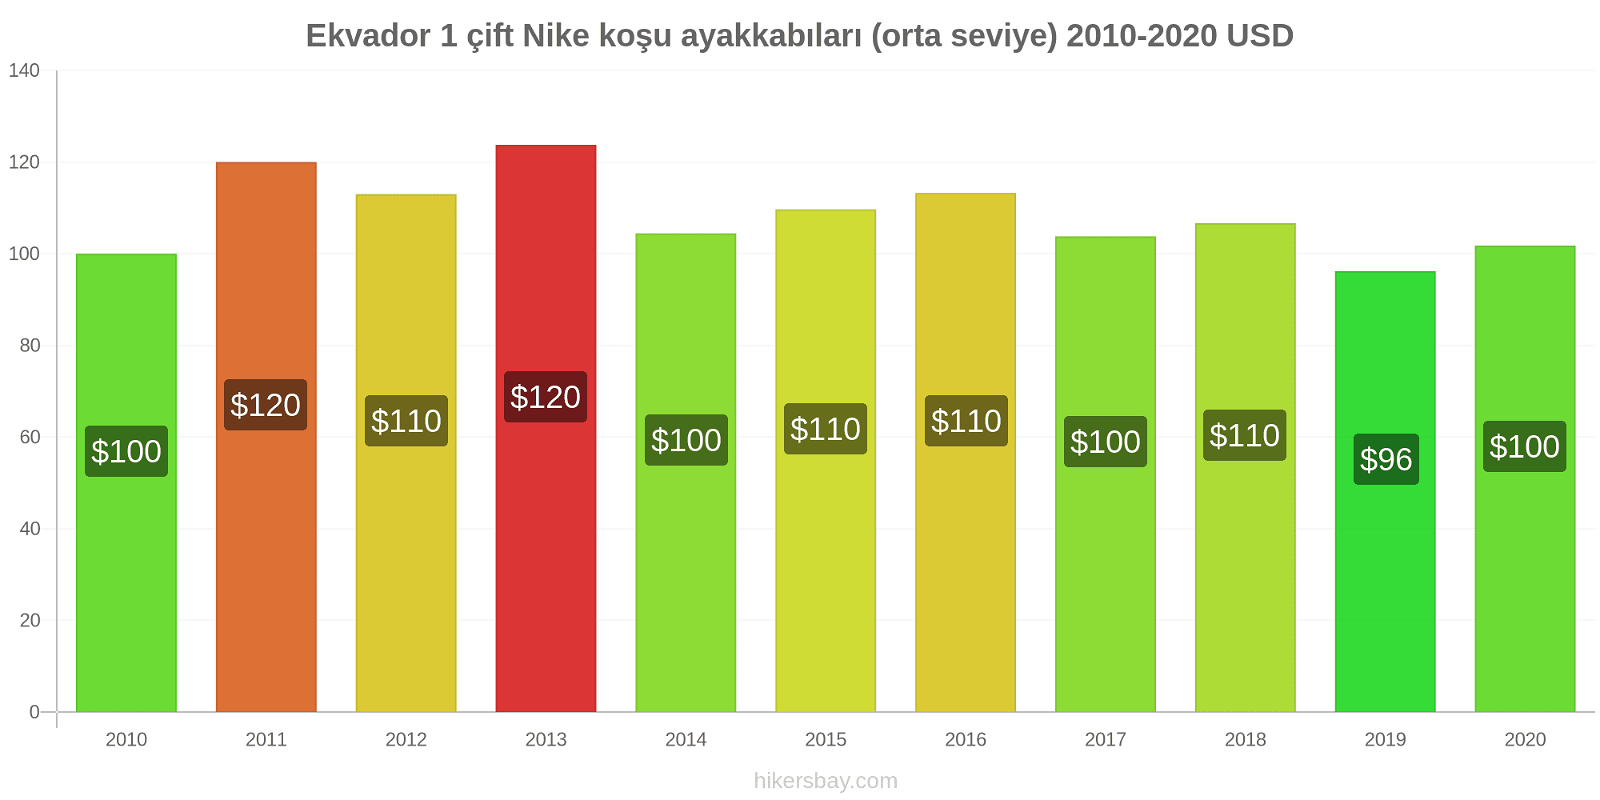 Ekvador fiyat değişiklikleri 1 çift Nike koşu ayakkabıları (orta seviye) hikersbay.com